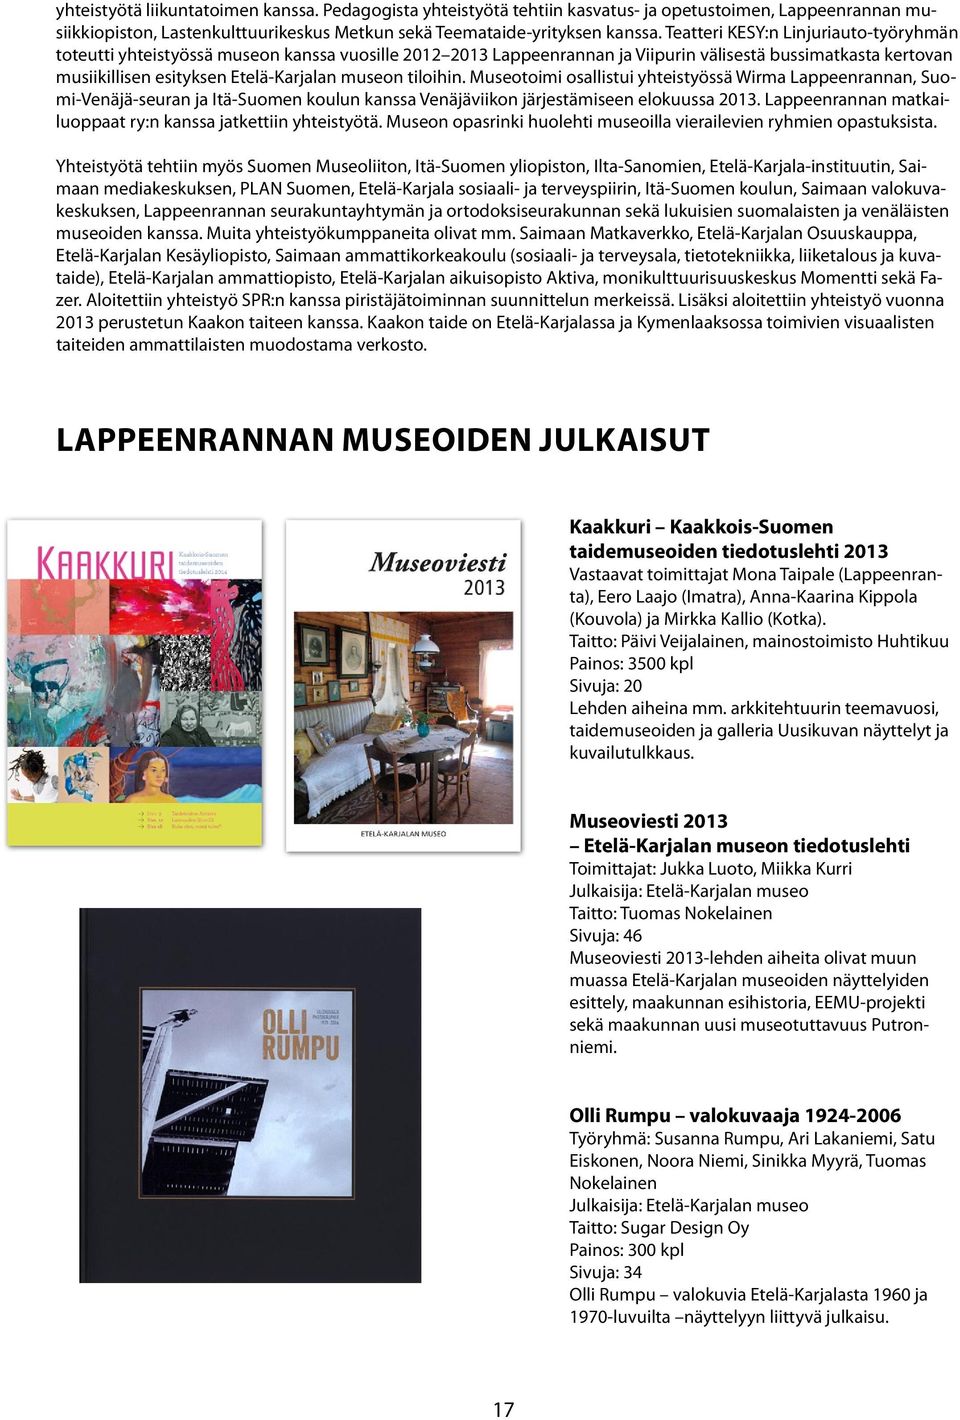 tiloihin. Museotoimi osallistui yhteistyössä Wirma Lappeenrannan, Suomi-Venäjä-seuran ja Itä-Suomen koulun kanssa Venäjäviikon järjestämiseen elokuussa 2013.